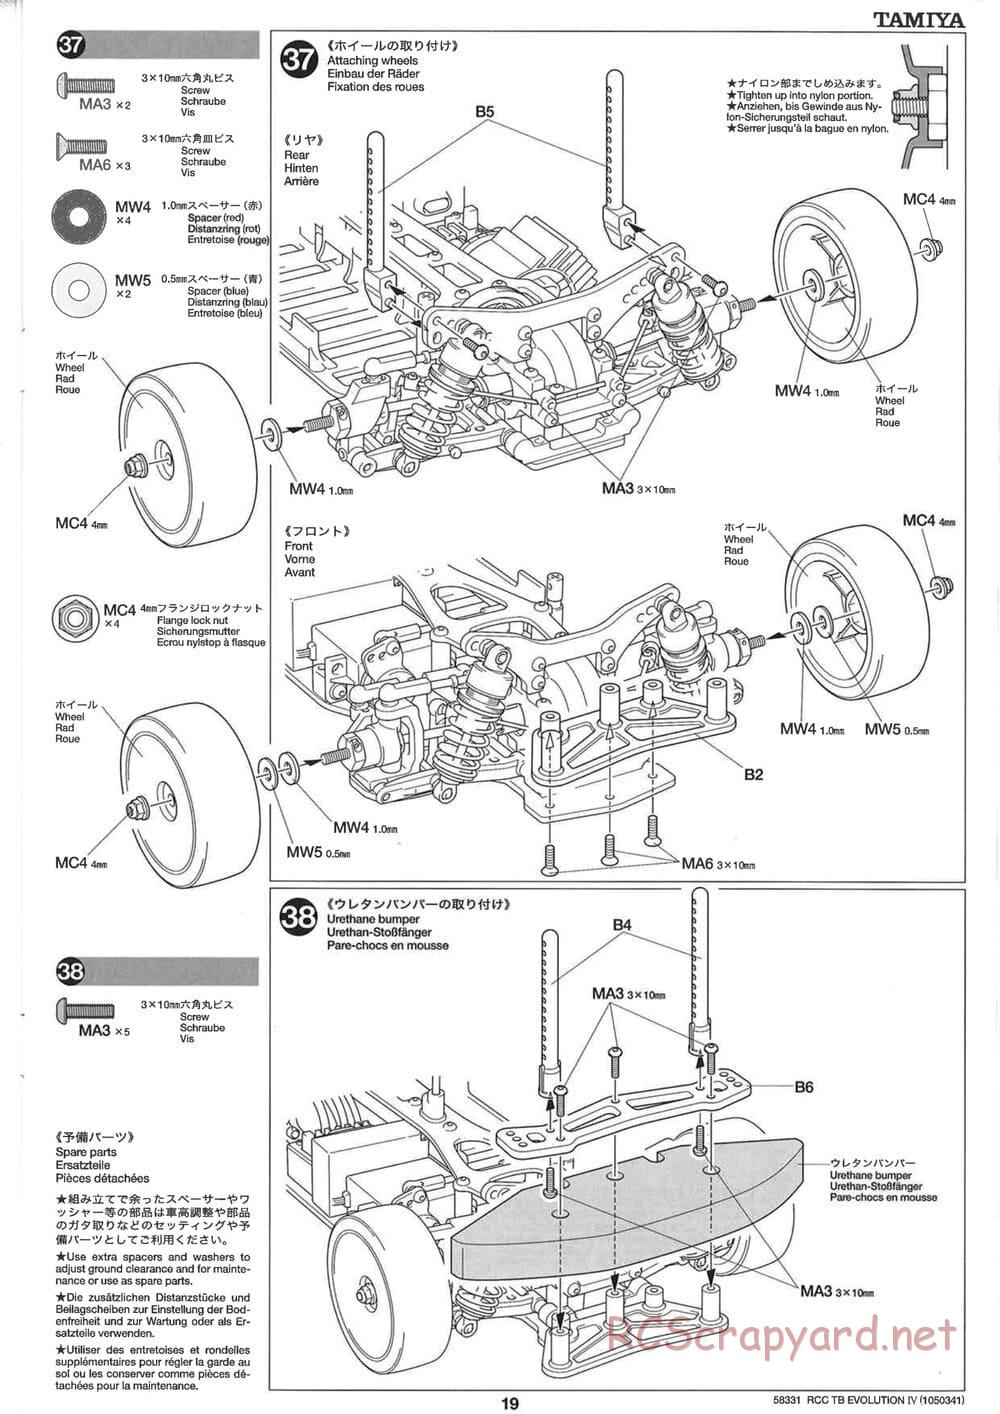 Tamiya - TB Evolution IV Chassis - Manual - Page 19